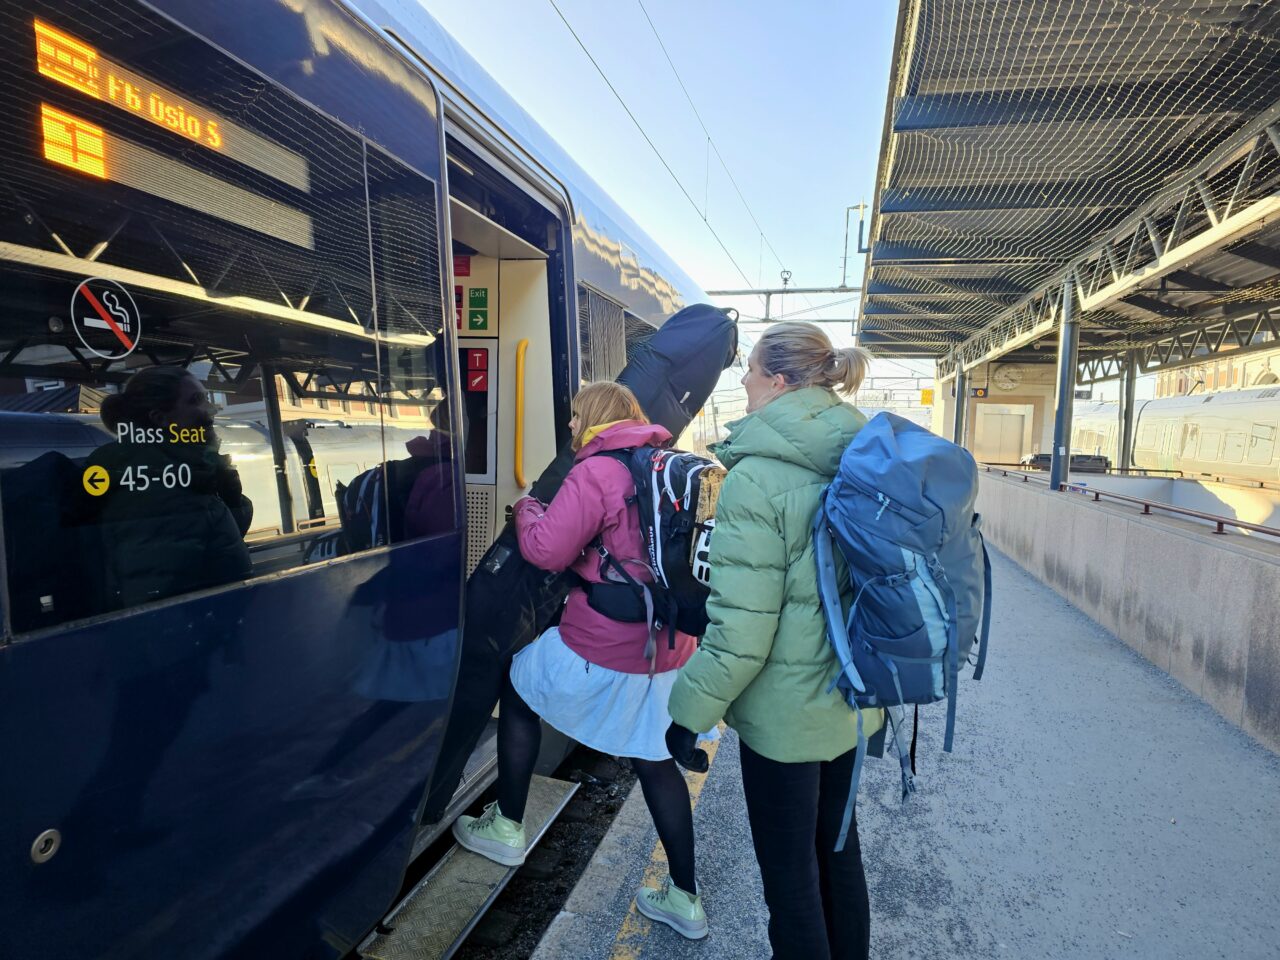 Turister med bagasje på vei inn på tog. Foto